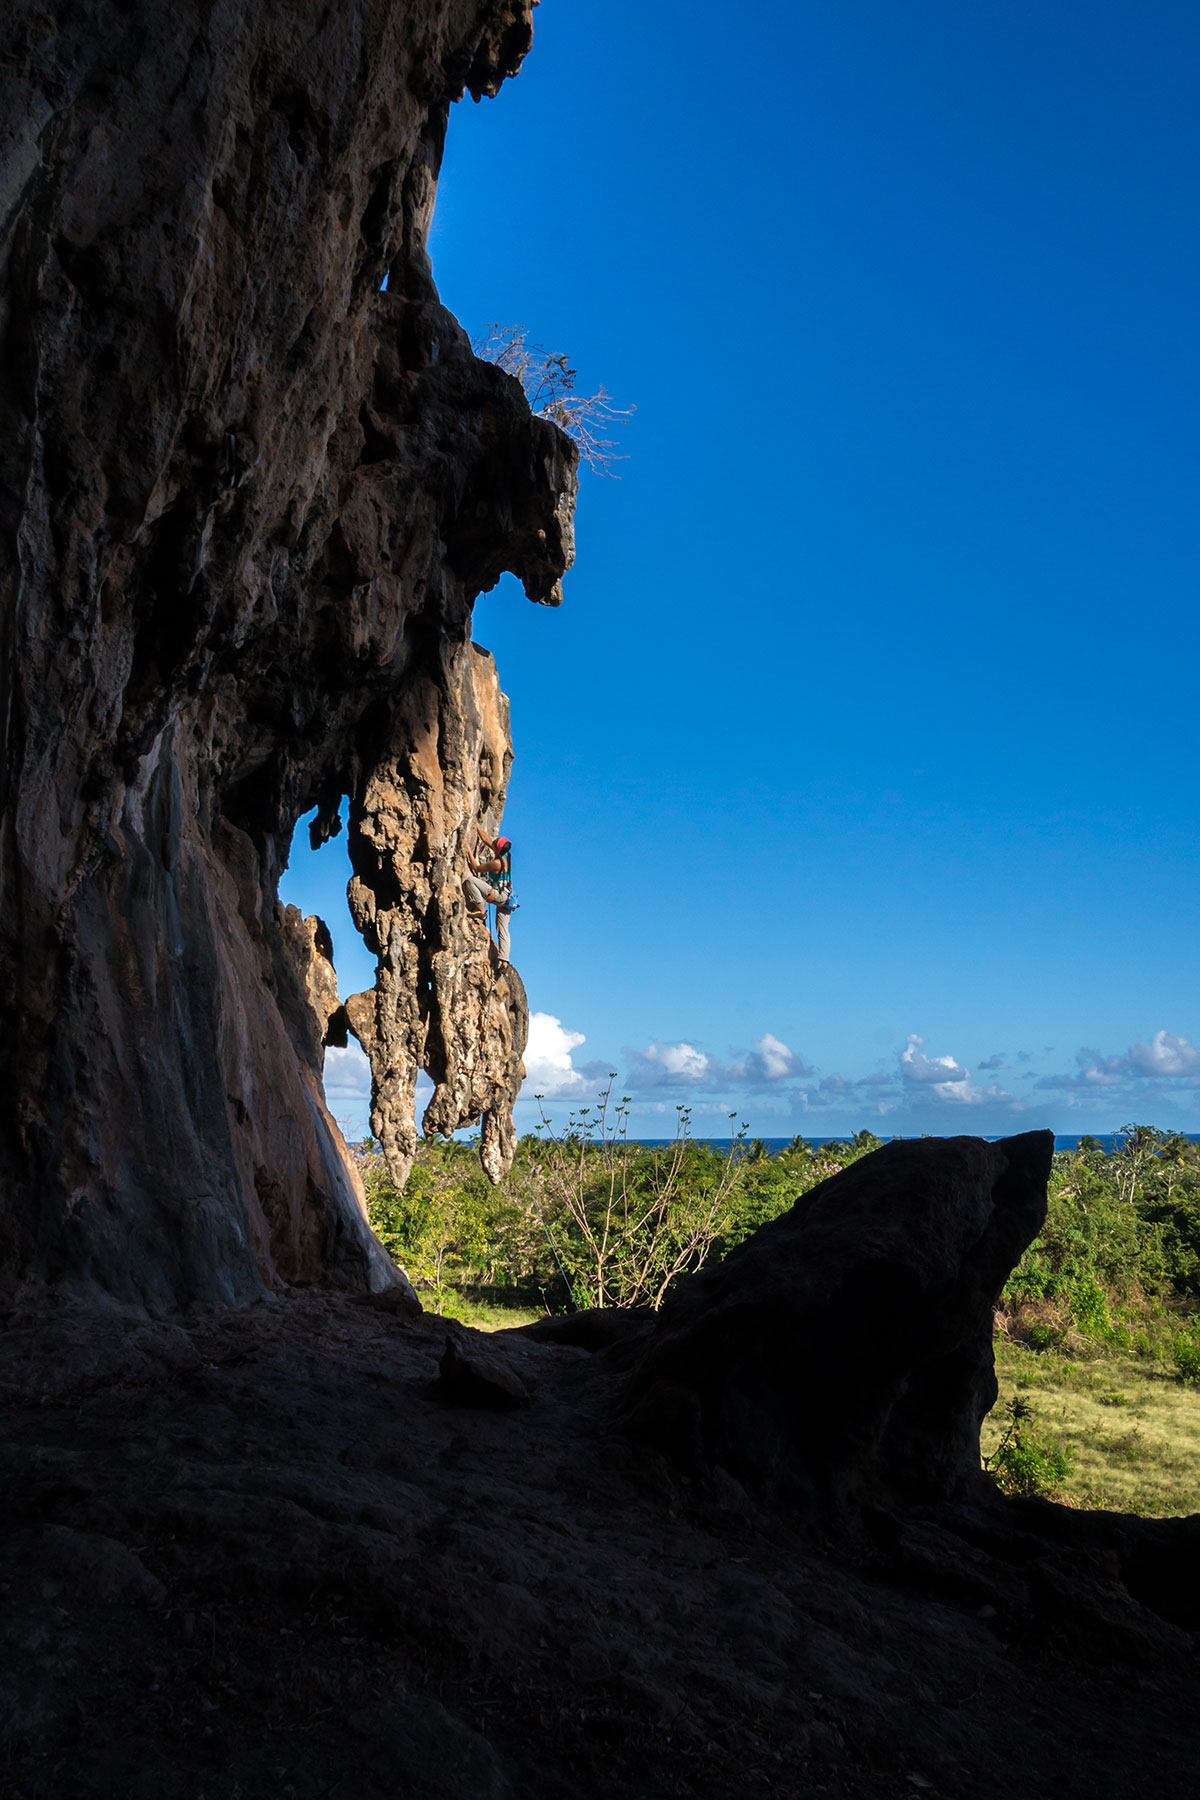 Dominican Republic, Playa Fronton near Las Galeras, sector Jerry, route 